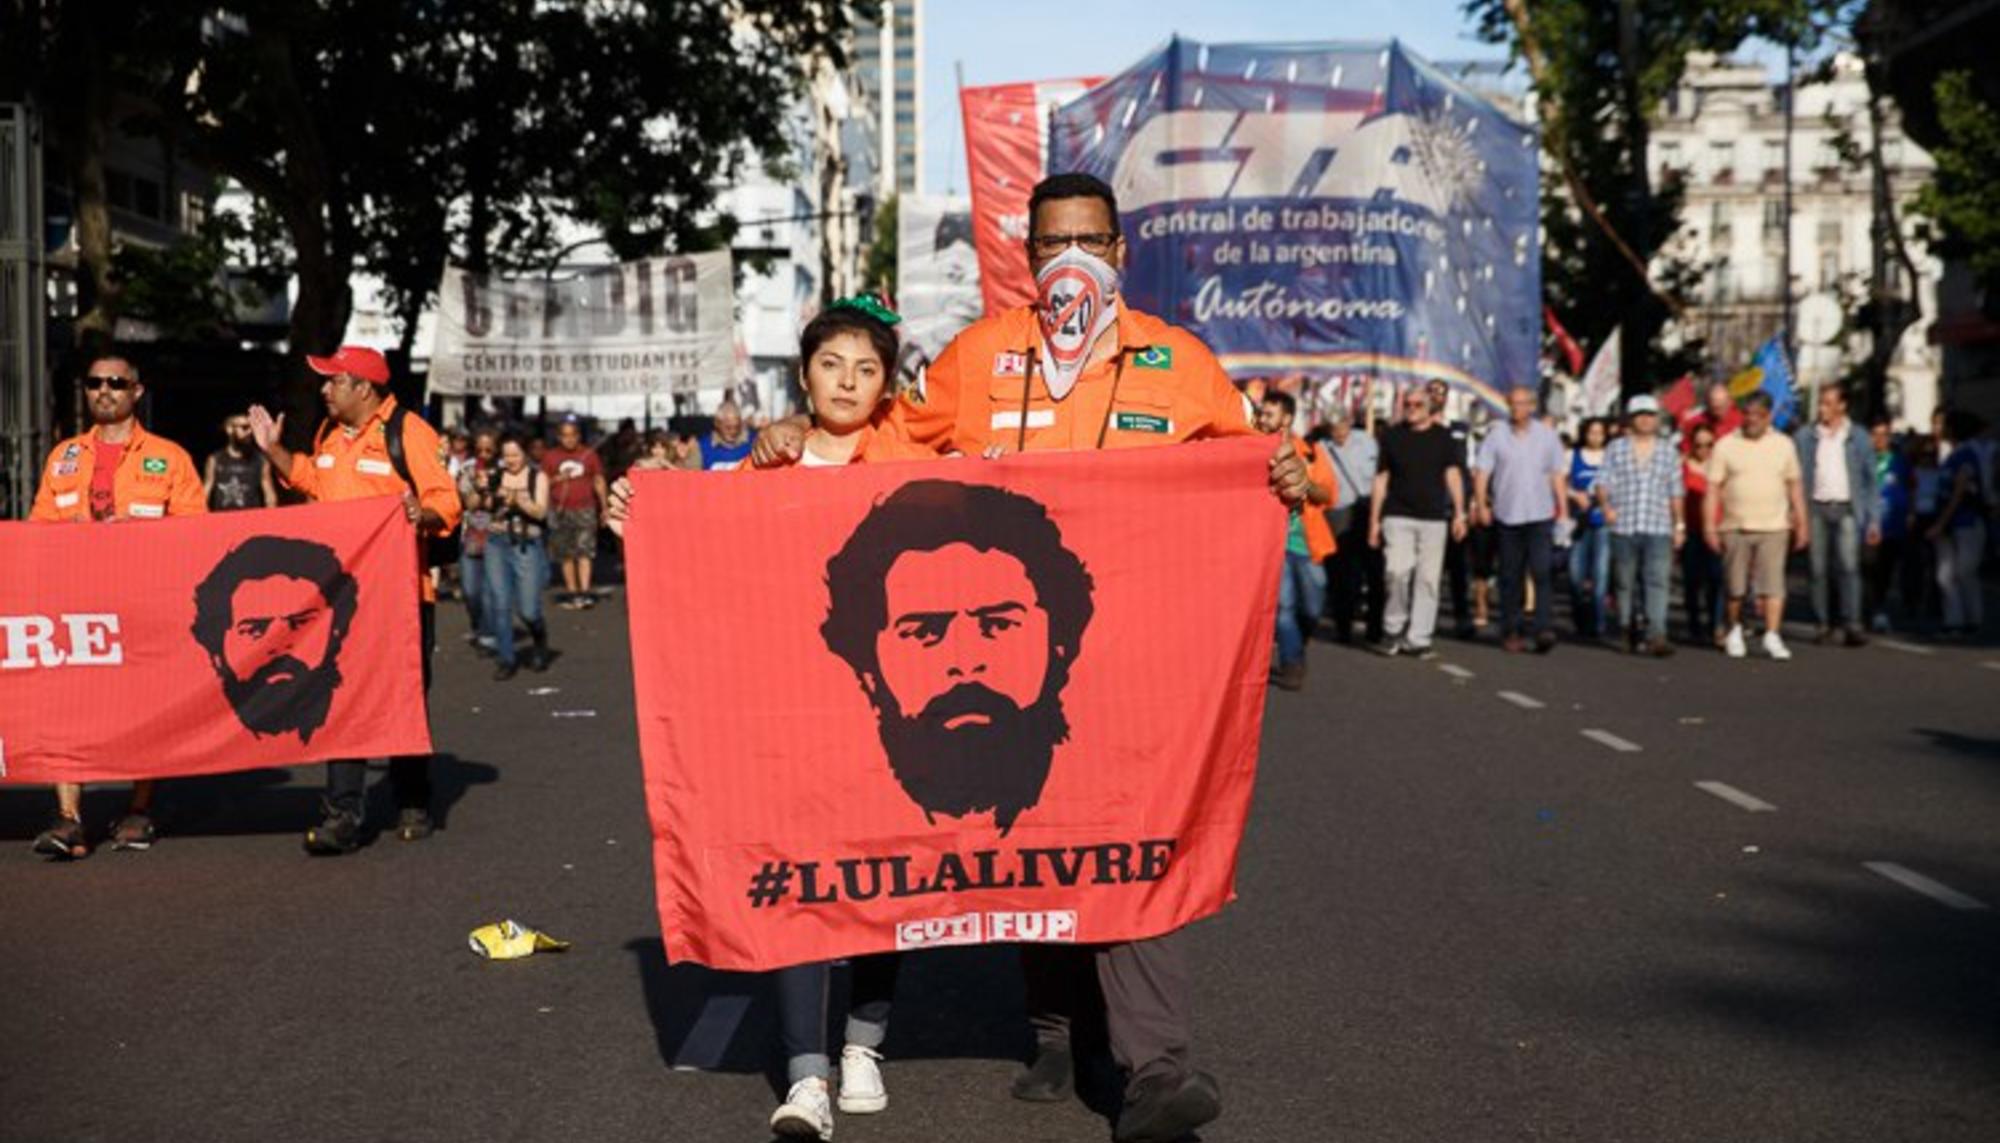 Protesta en Buenos Aires contra el encuentro del G20, el 30 de noviembre de 2018 -Lula da silva